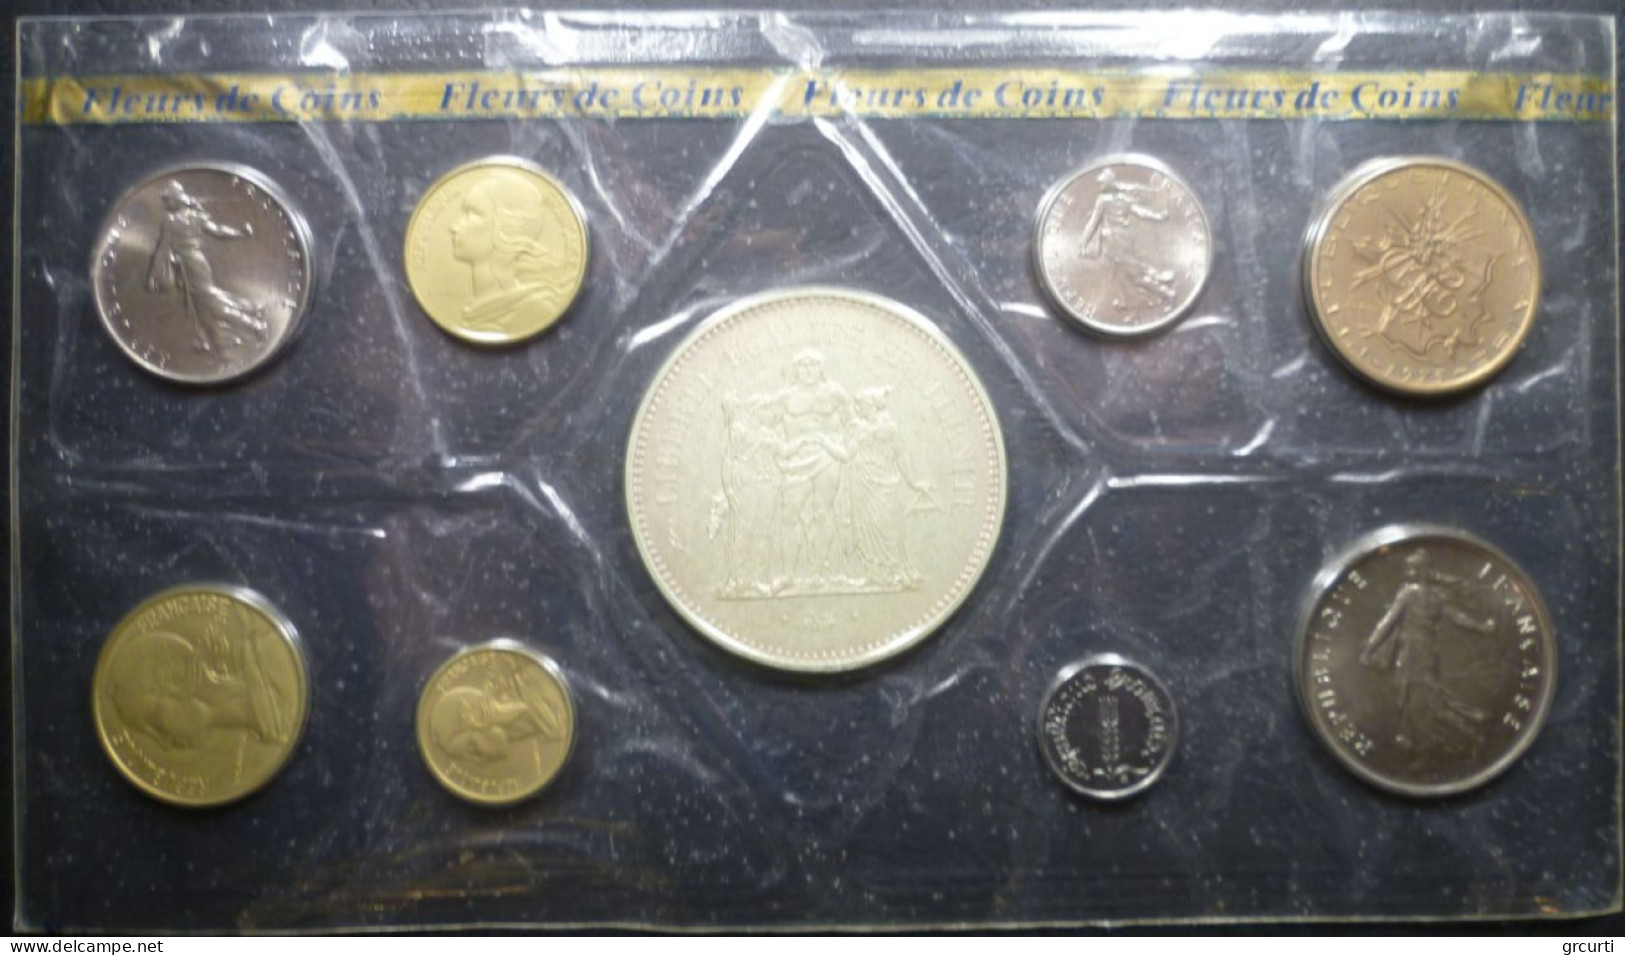 Francia - Set Fleurs De Coins 1975 - KM# SS12 - BU, BE & Coffrets